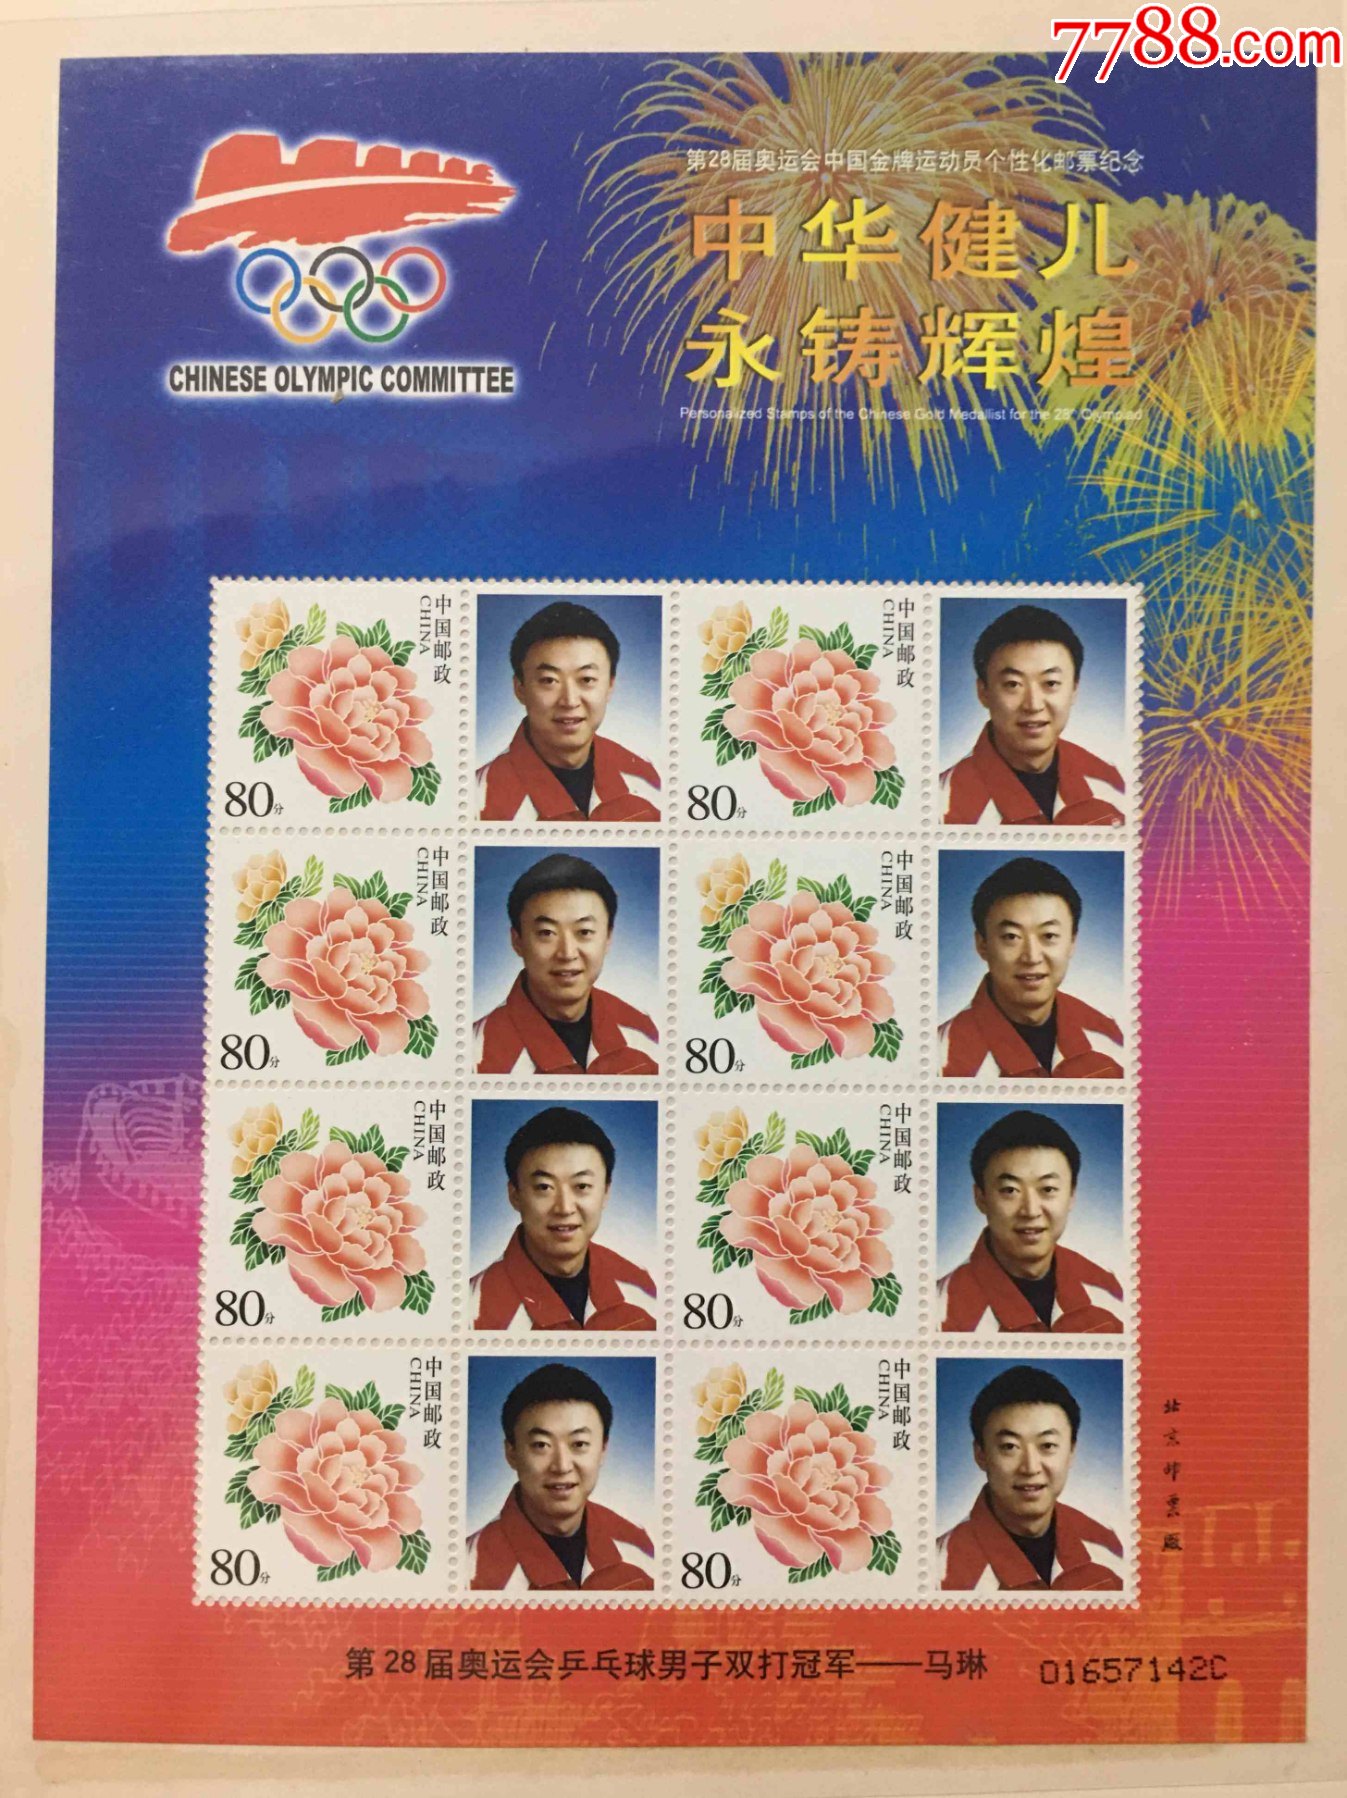 2004年第28届奥运会金牌运动员乒乓球冠军马琳牡丹个性化邮票版票邮折